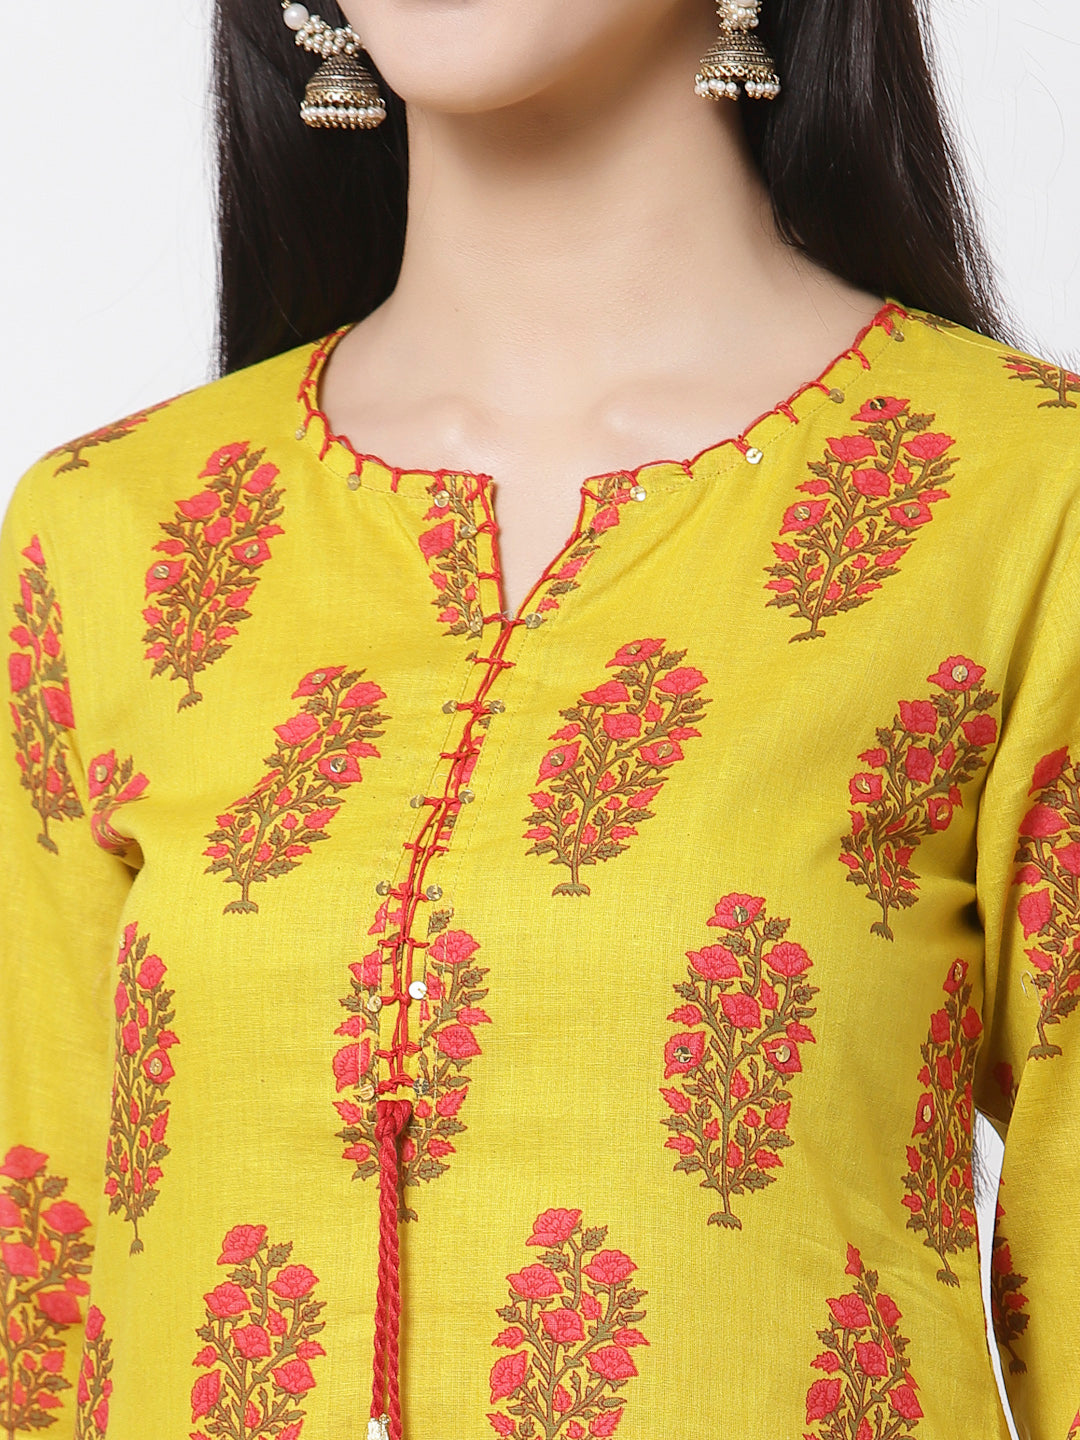 Women Yellow Cotton Printed  Kurta by Myshka (1 Pc Set)